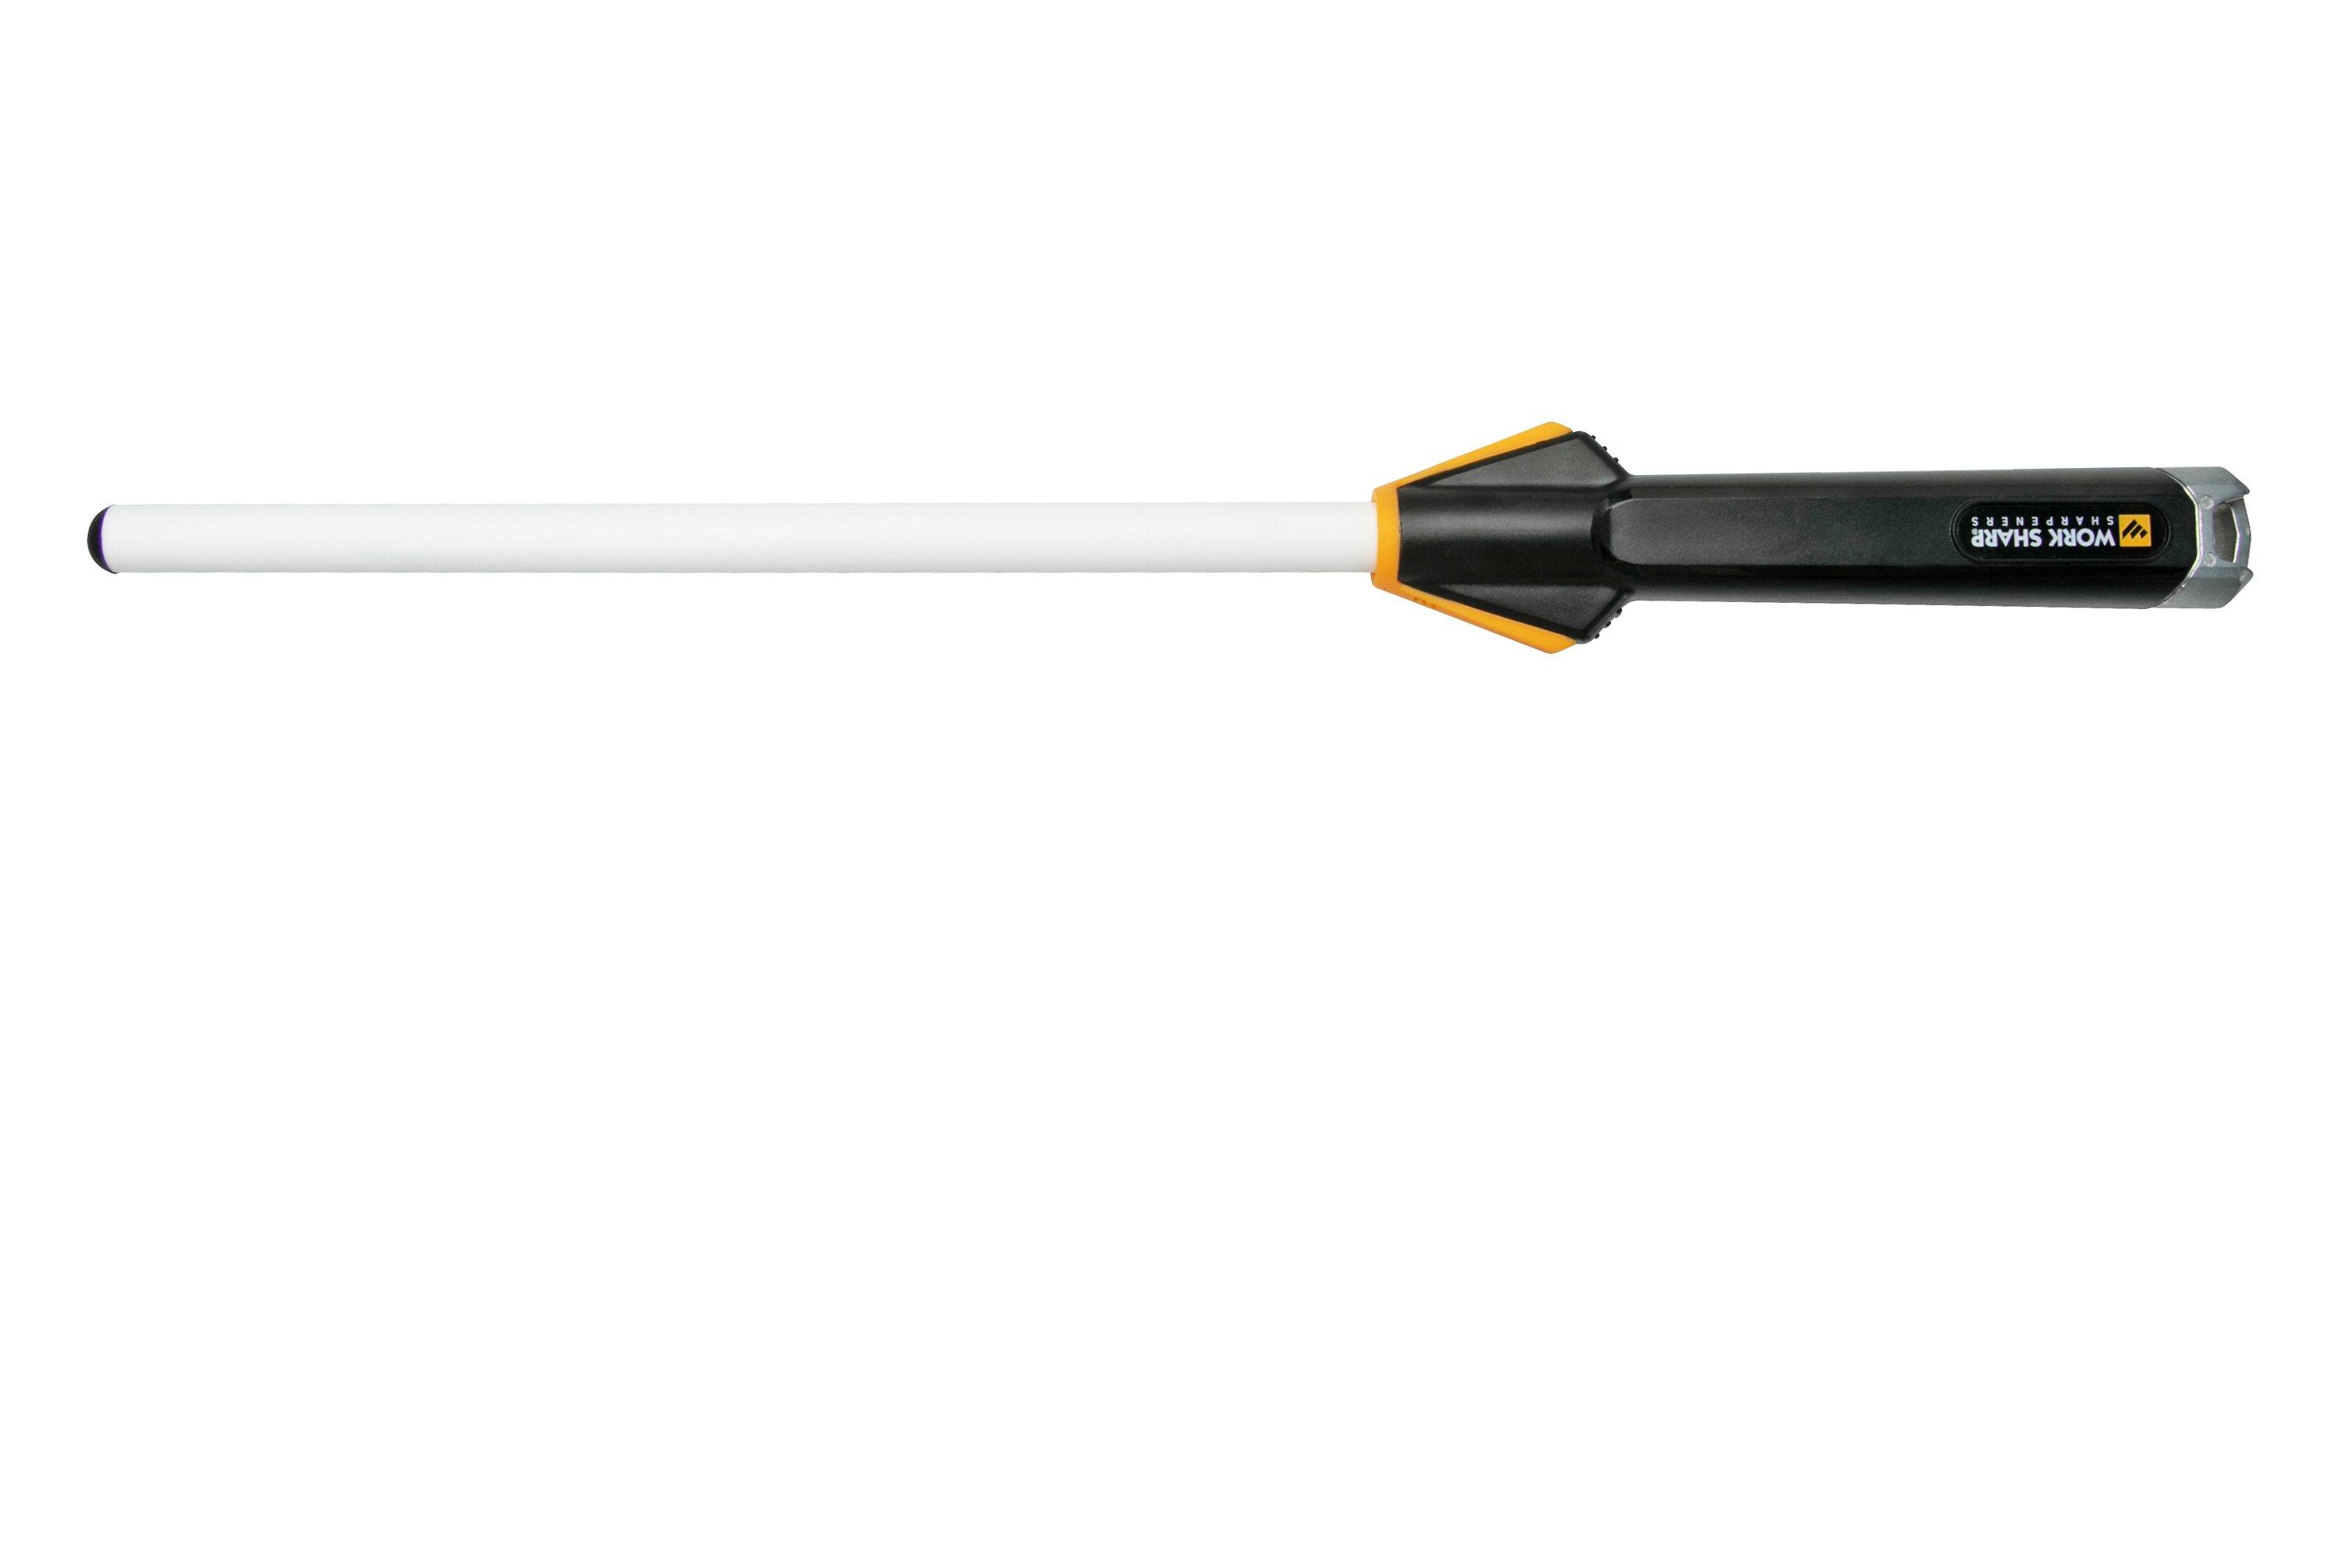 Abrasive Rod Holder for Work Sharp Precision Adjust Sharpening